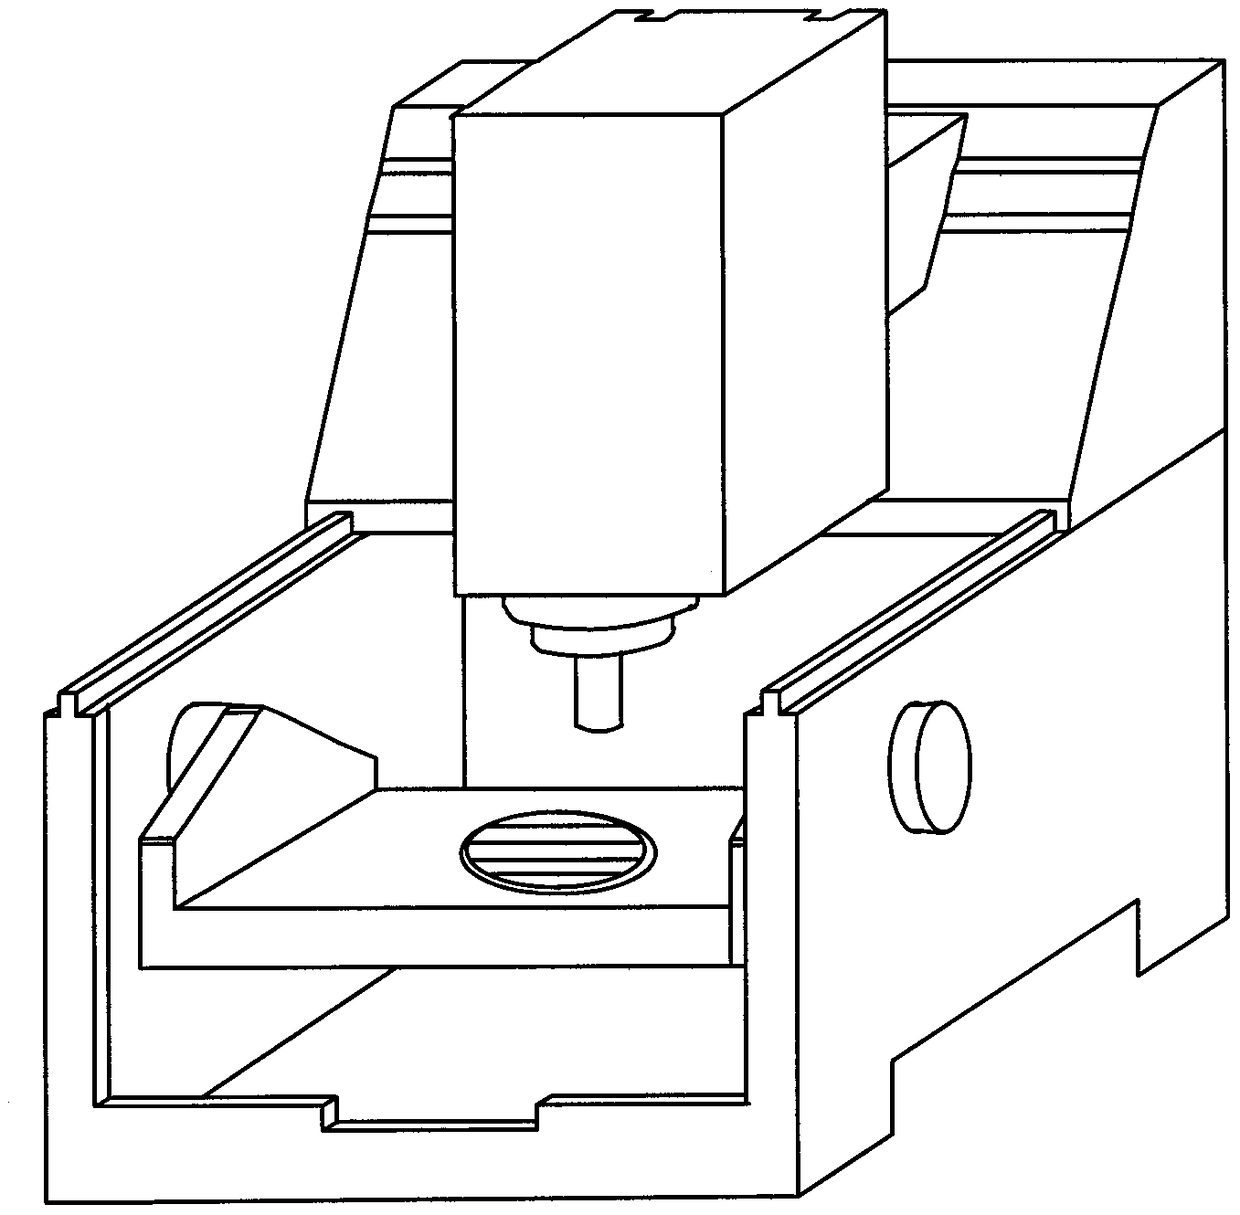 Machine tool rotating shaft geometric error identification method based on ballbar measurement